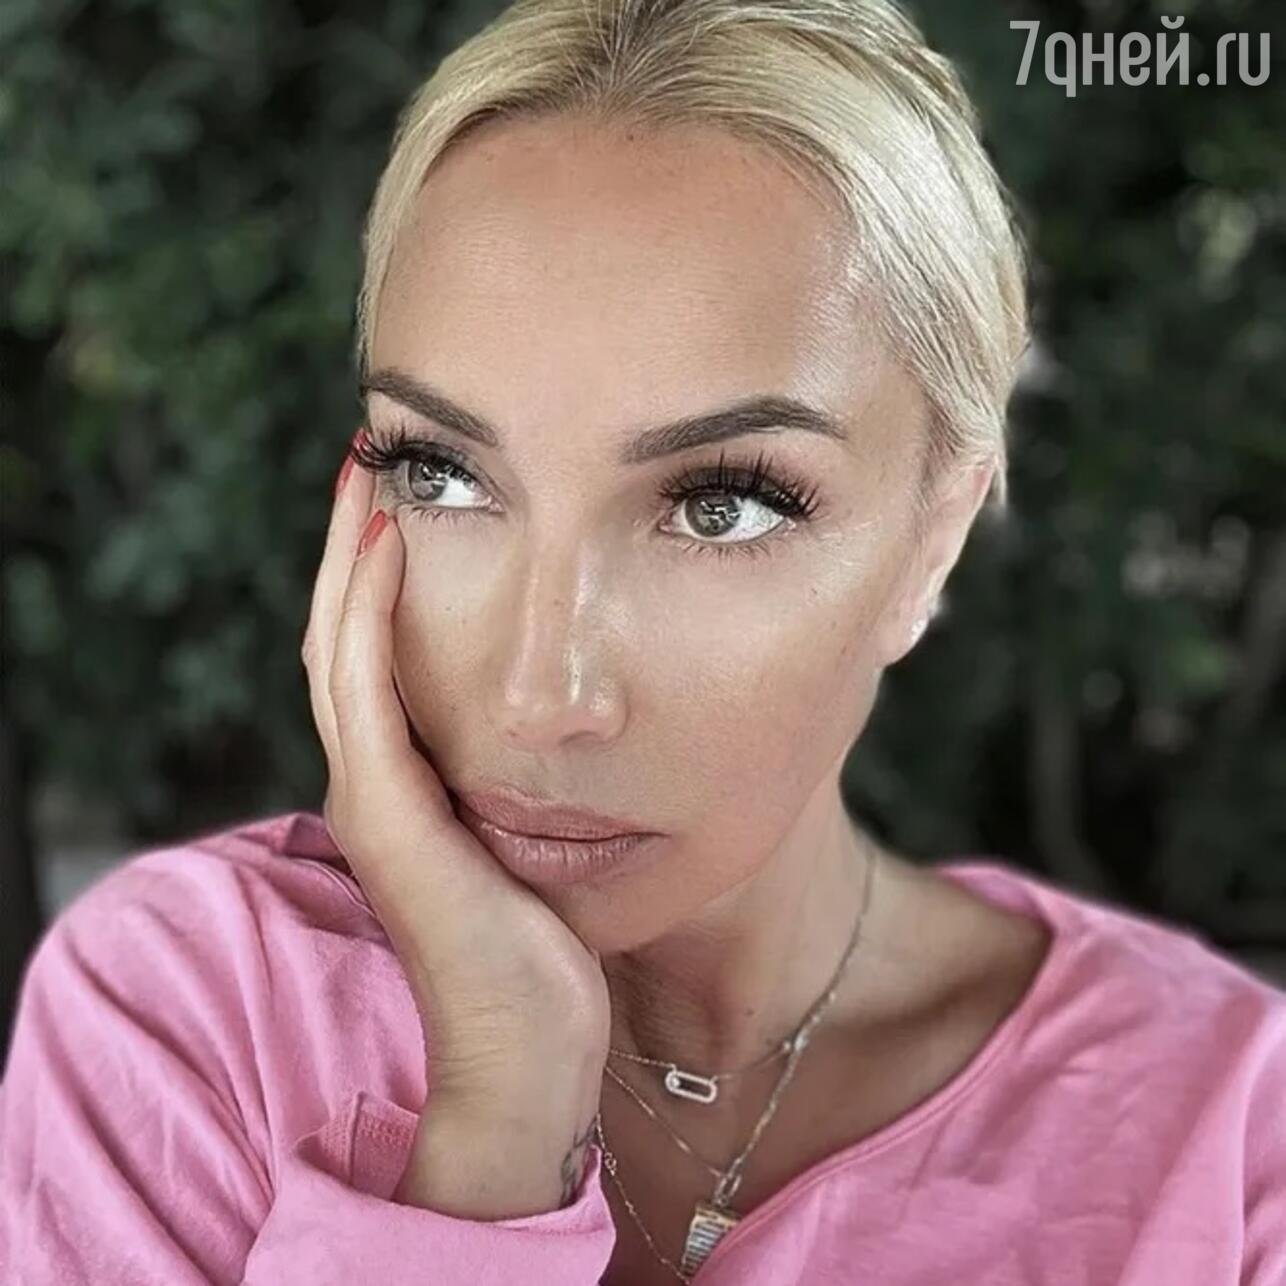 Лера Кудрявцева - Поиск порно